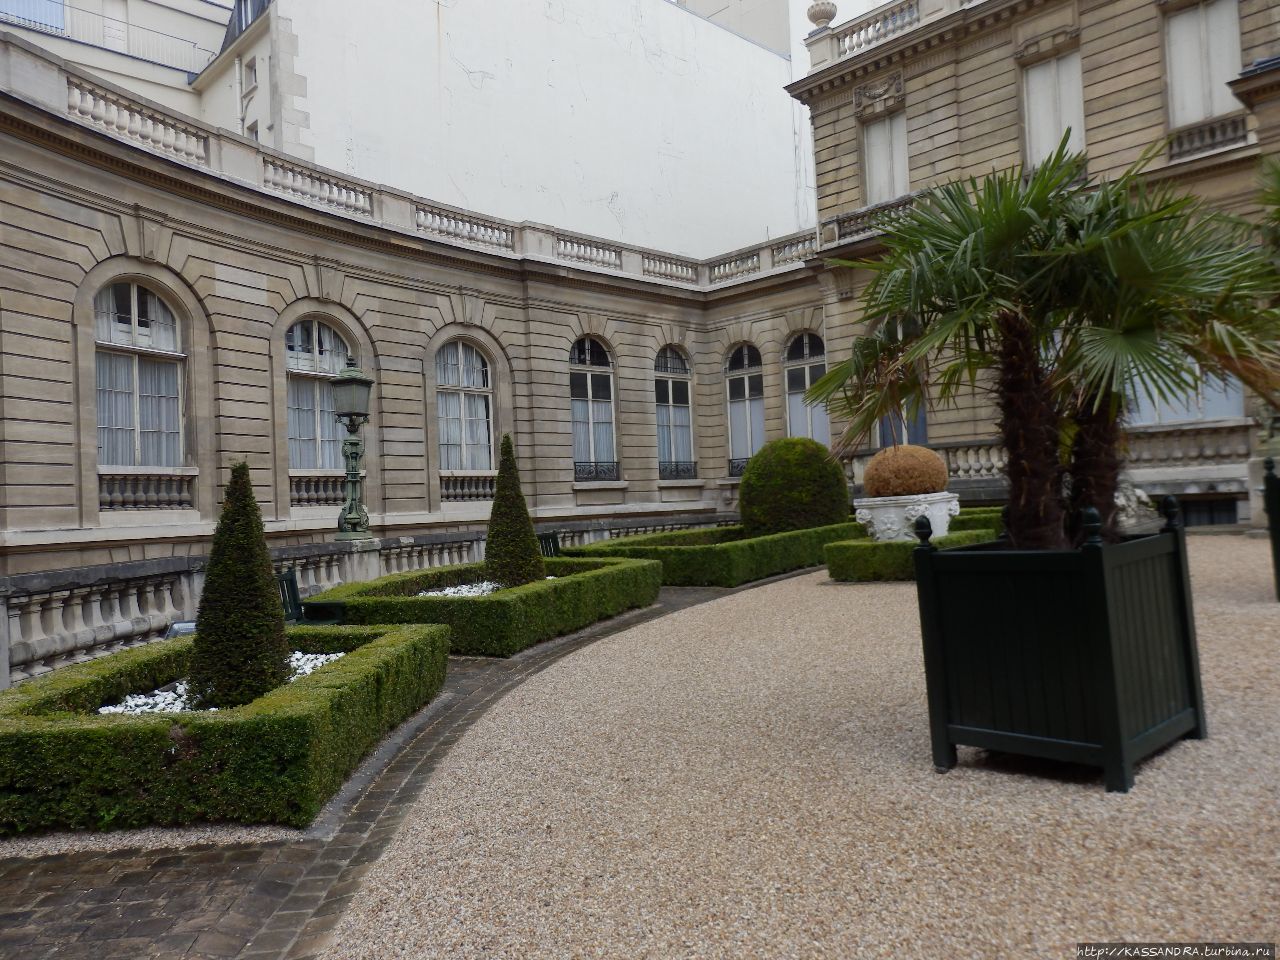 Коллекция музея Жакмар-Андре Париж, Франция